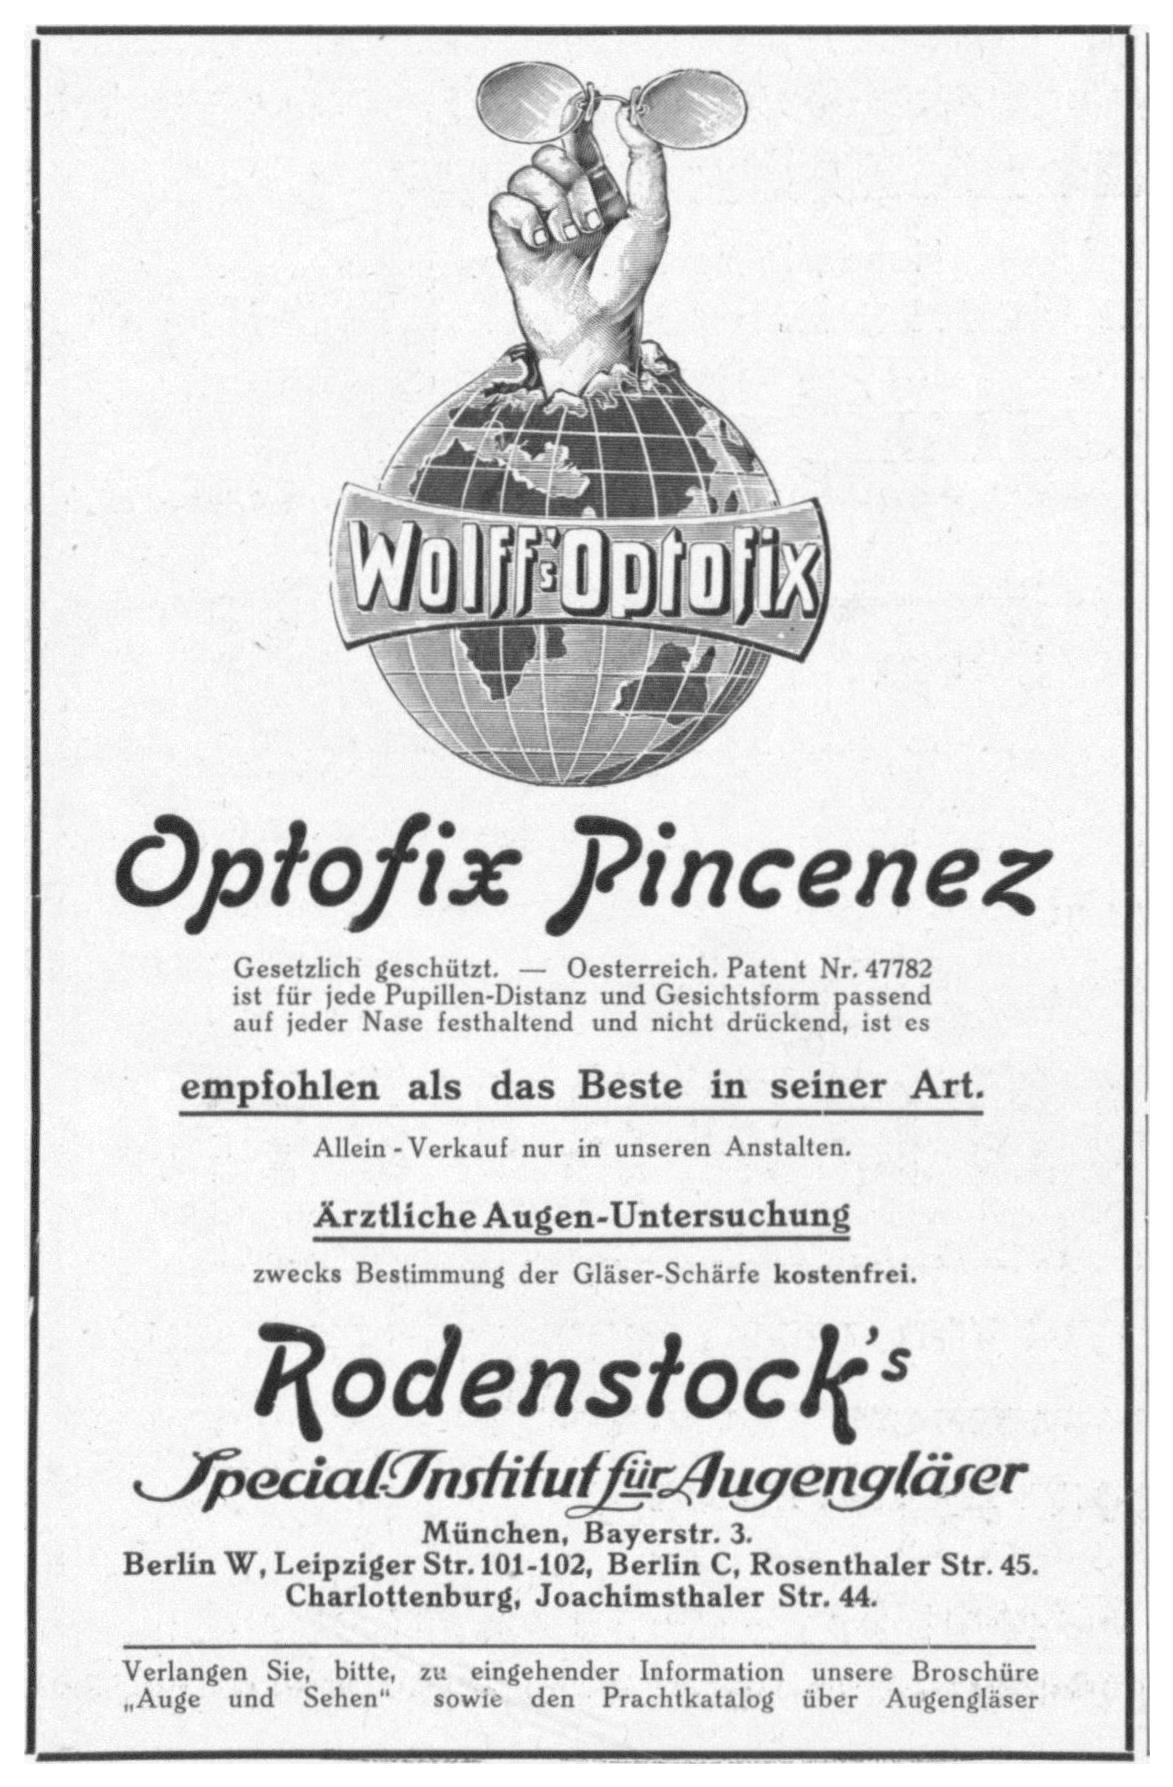 Rodensrock 1912 0.jpg